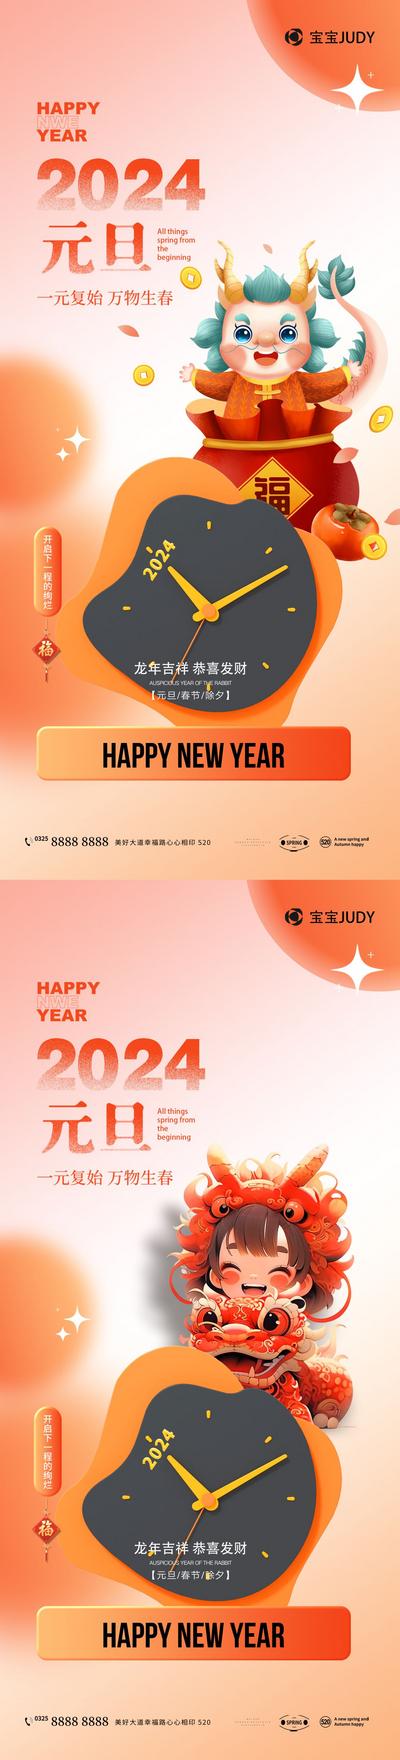 南门网 广告 海报 节日 元旦 新年 龙年 2024 系列 插画 时钟 钟表